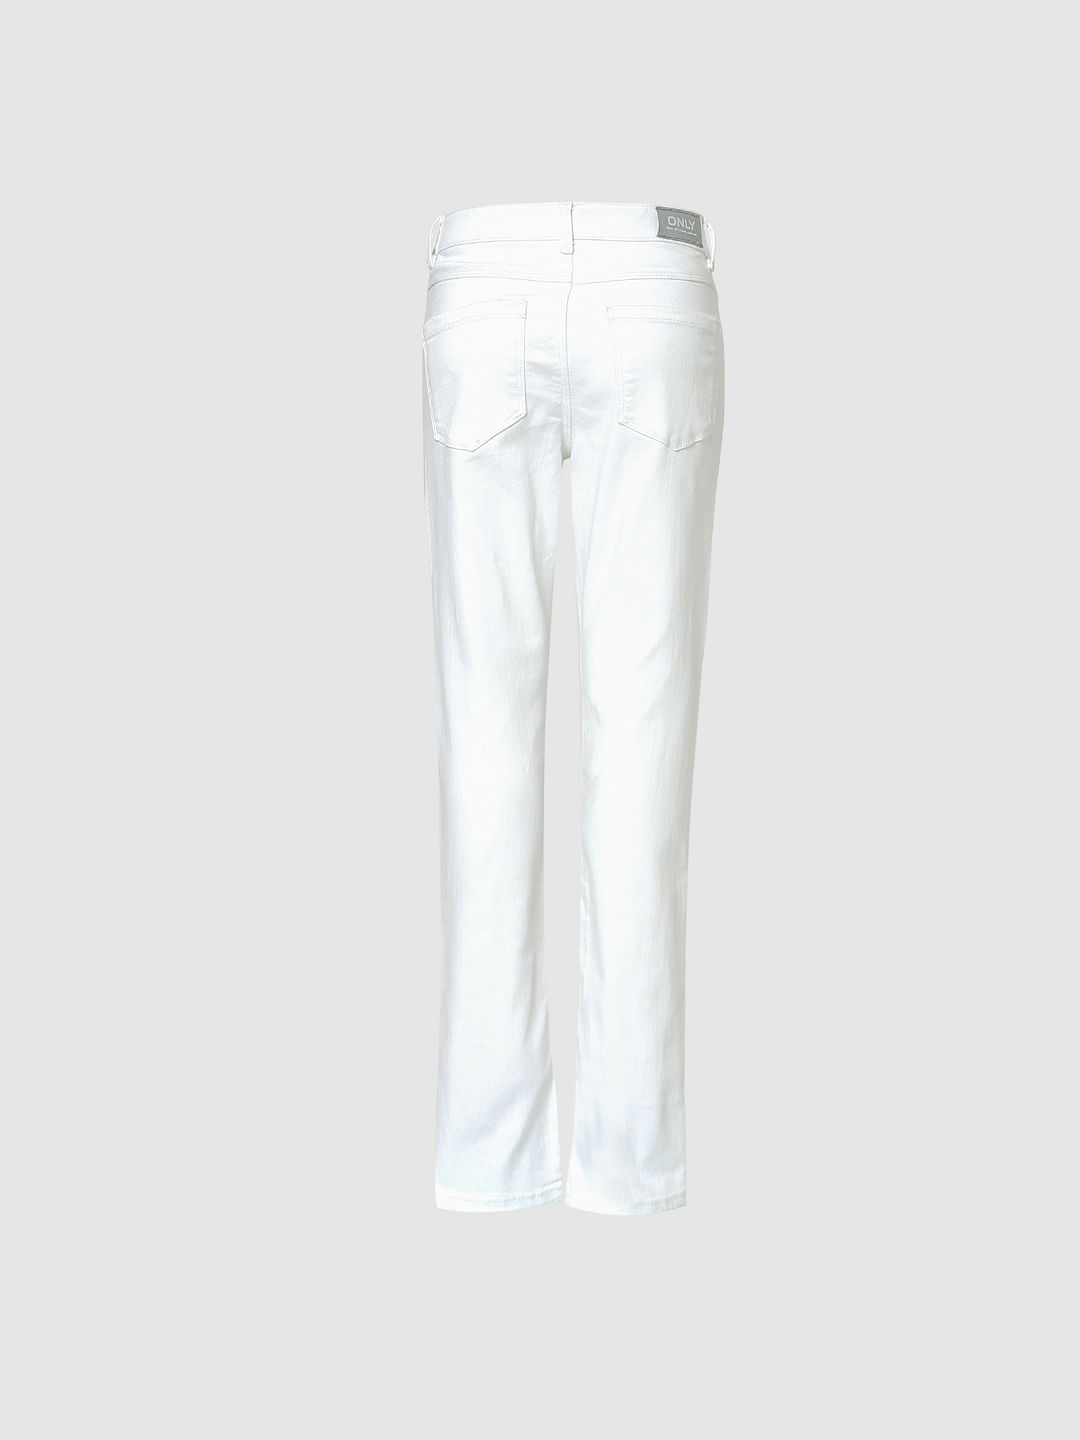 Buy Girls Black  White Tweed Print Boot Leg Pants Online at Sassafras